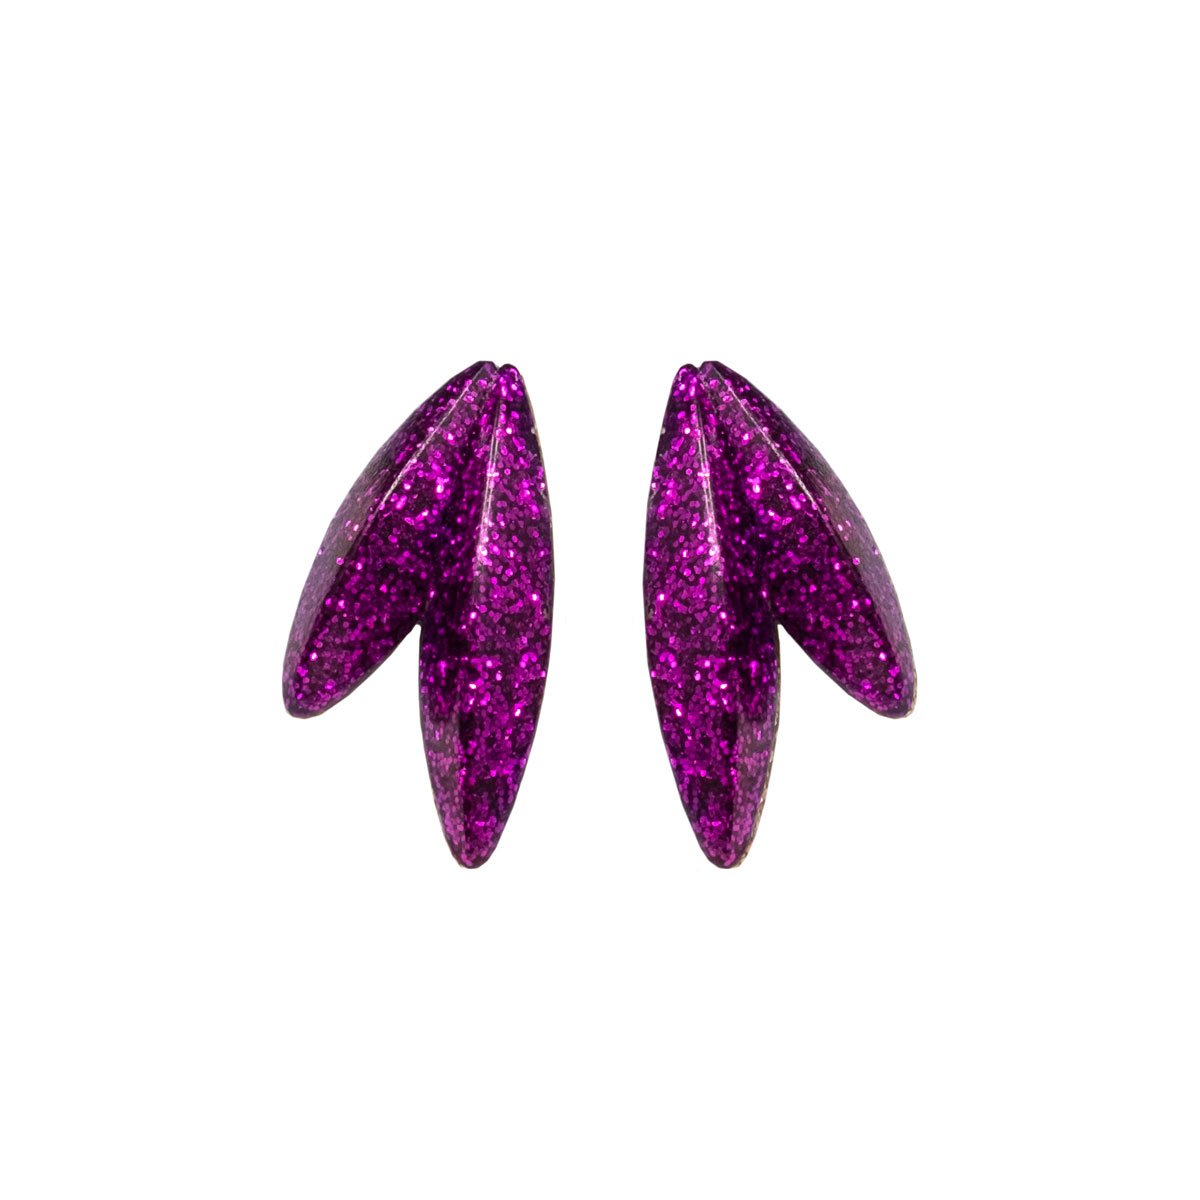 Twin-LEAVES ✕ Shine earrings, purple